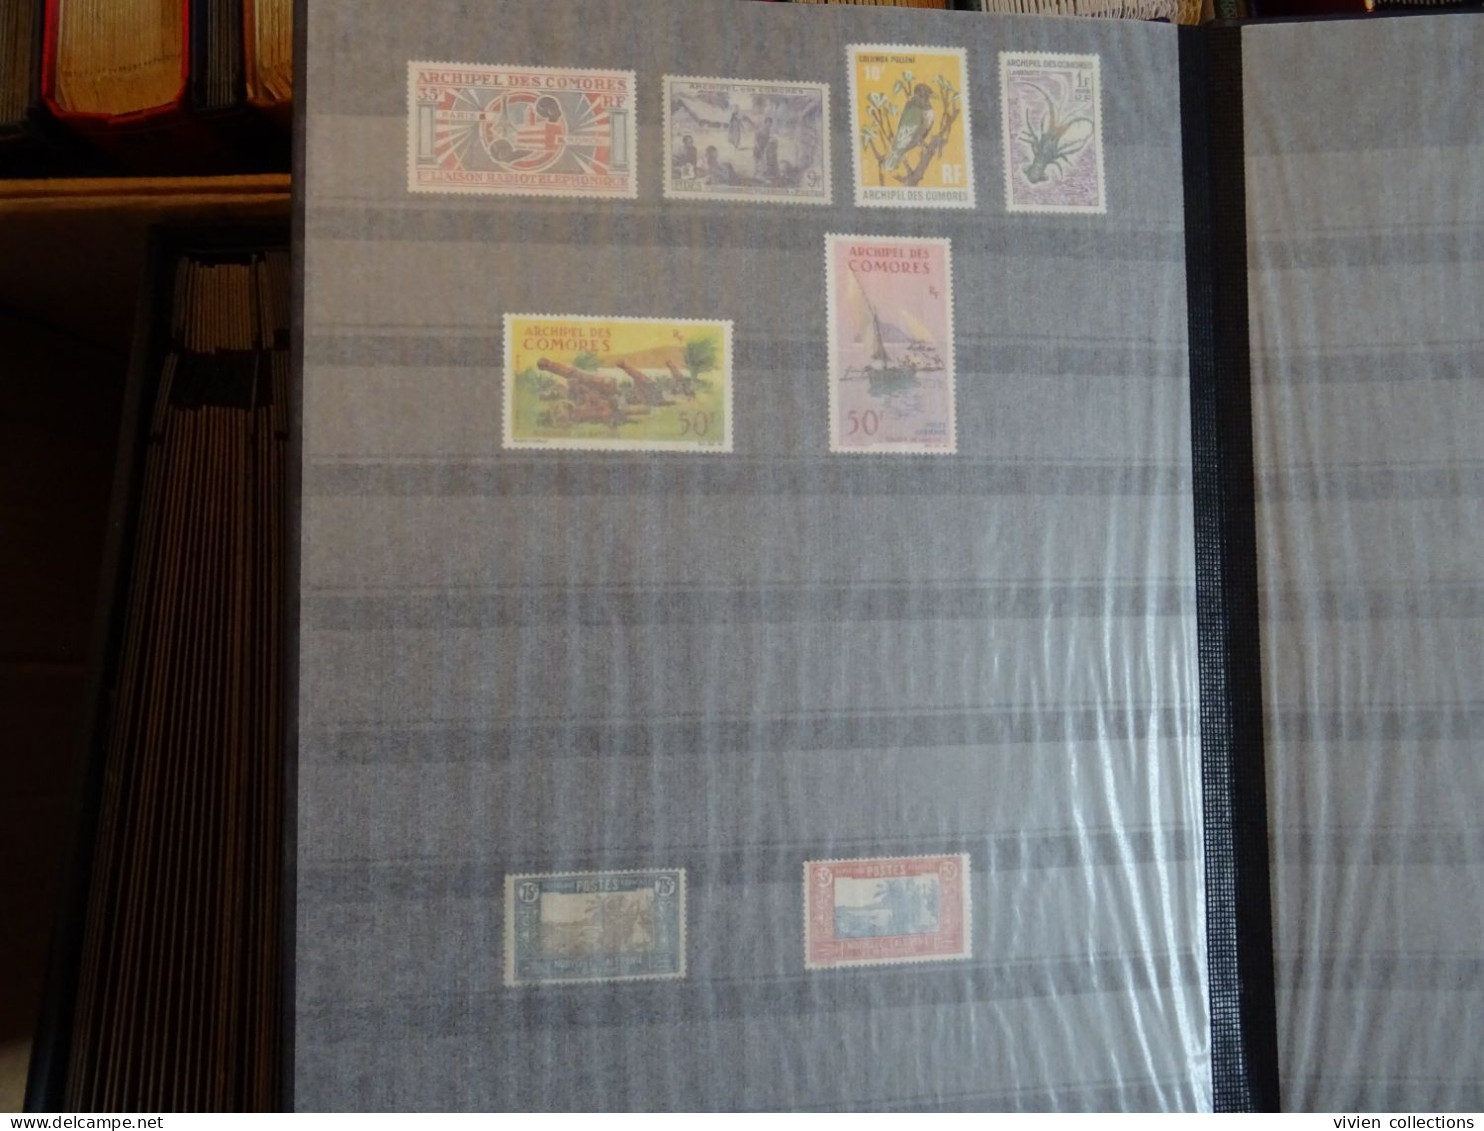 97 classeurs de timbres dont France avec une collection en 3 albums, colonies françaises avant et après indépendances...